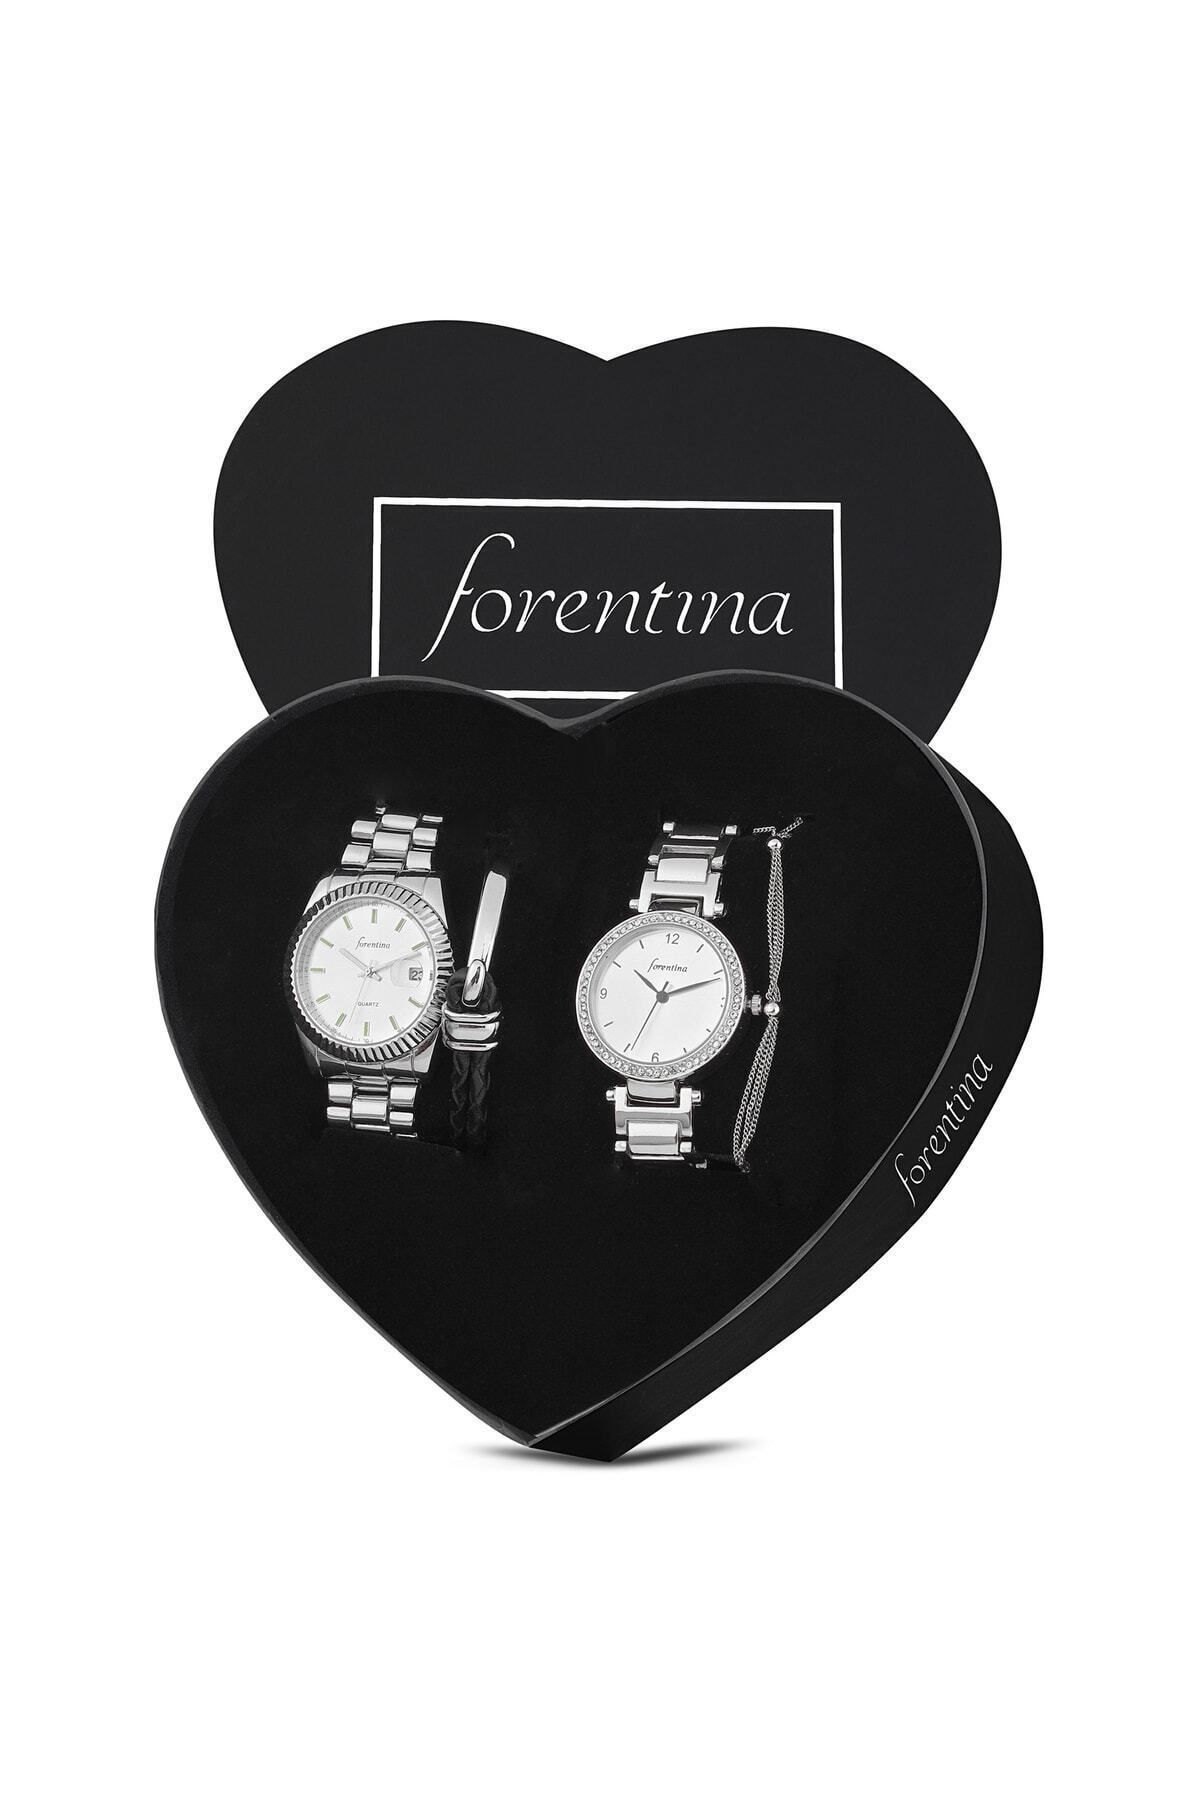 Forentina Çift Saatleri - Sevgili Kadın Erkek Metal Kol Saati Bileklik Kombin Sevgiliye Hediye